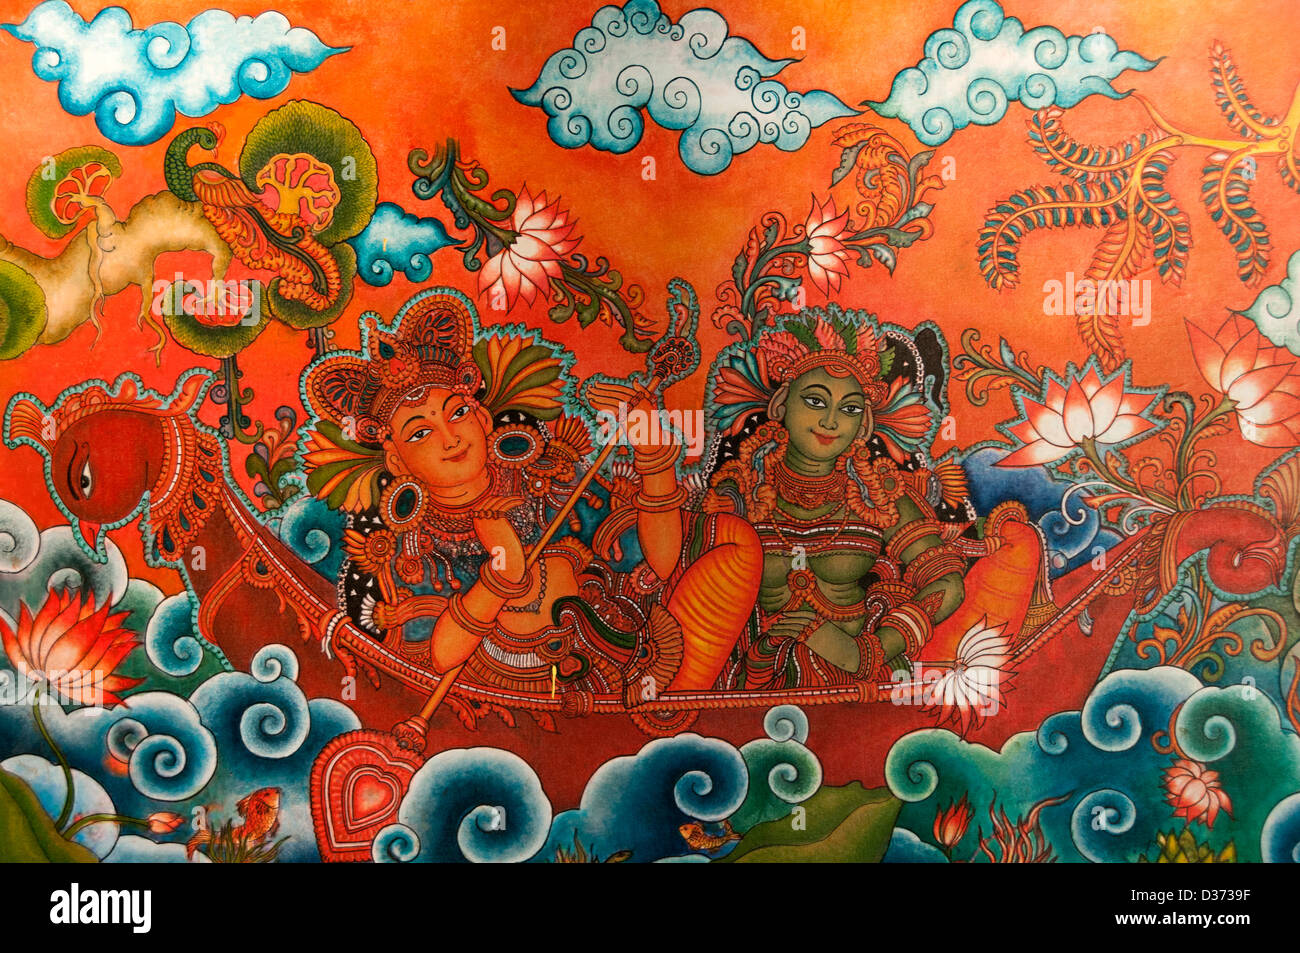 La peinture murale représentant des dieux indiens Banque D'Images